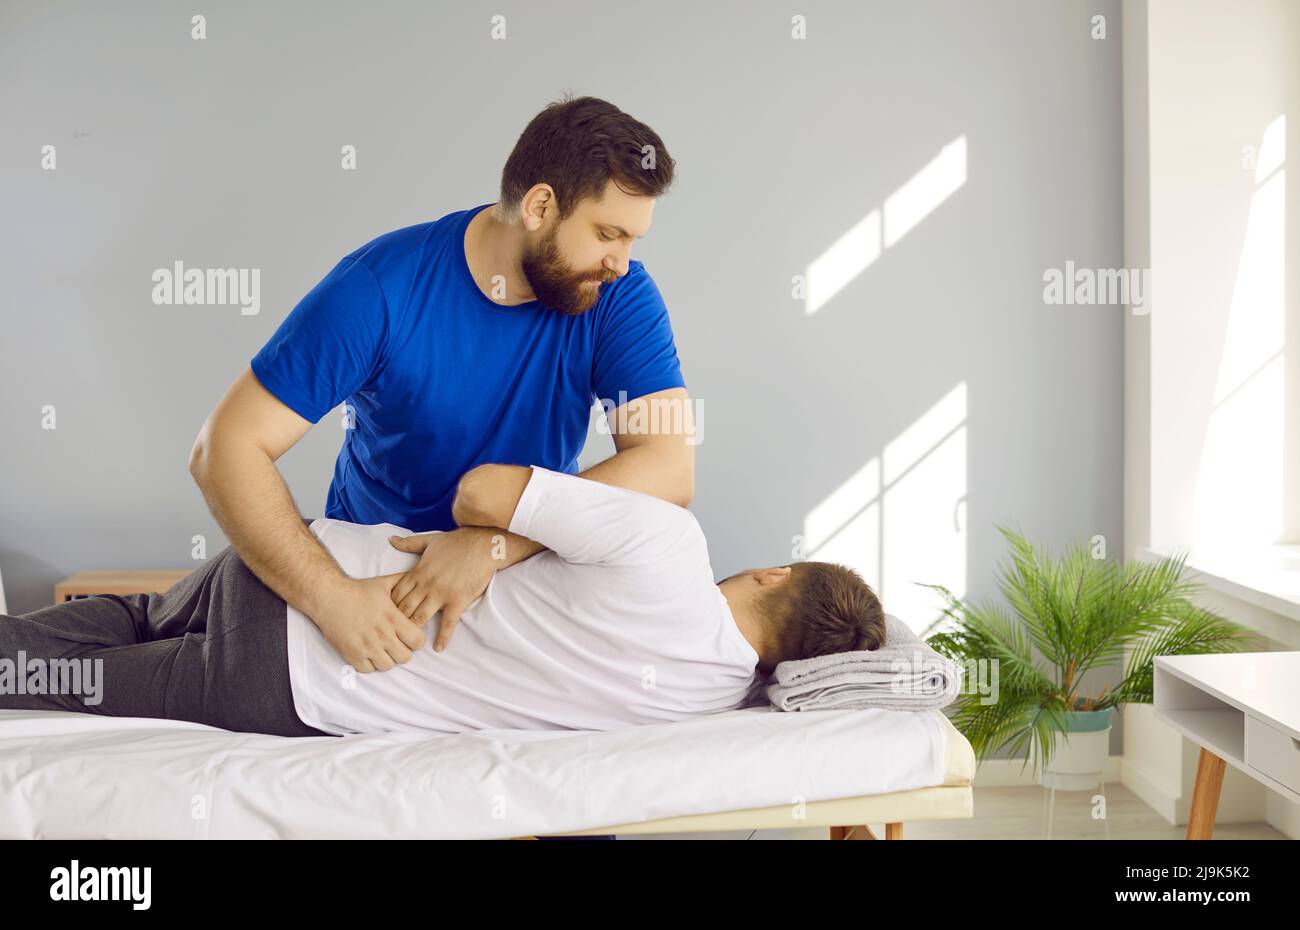 Quiropráctico, fisioterapeuta, osteópata o terapeuta manual que ayuda al hombre con problemas de espalda Foto de stock